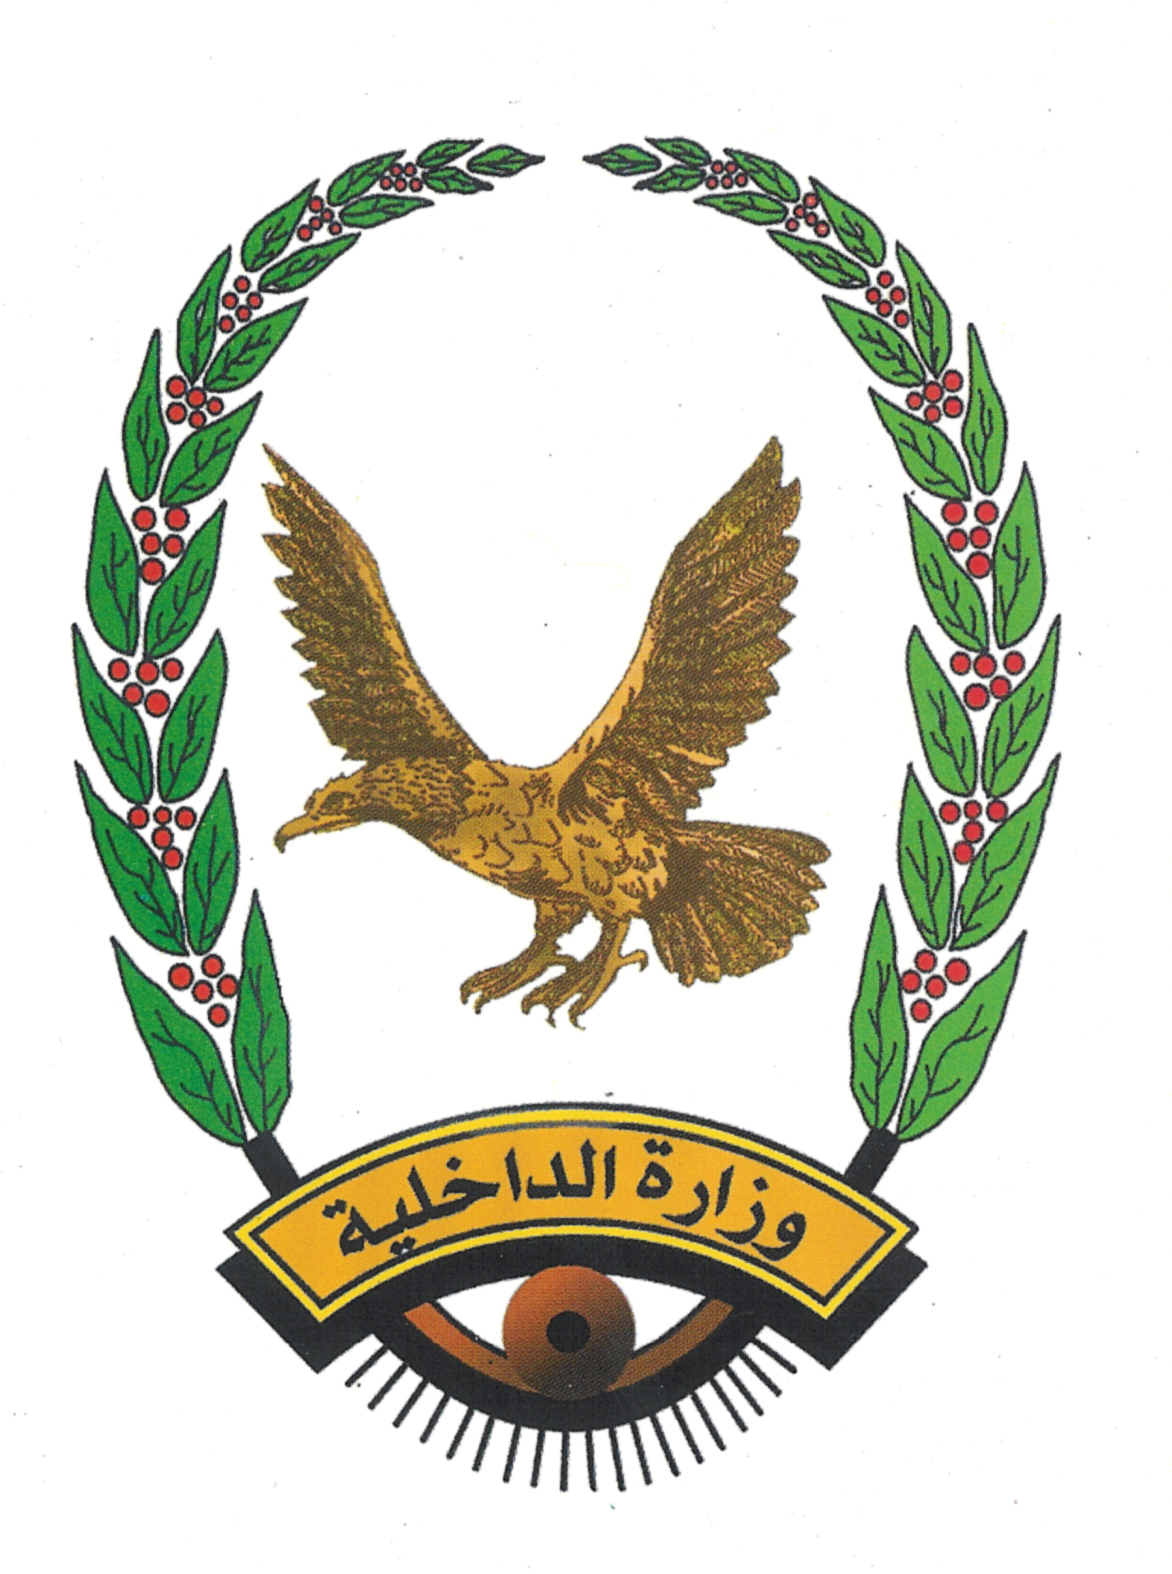 تصريح هام لـ«وزارة الداخلية» بشأن تهديدات الذراع الأيمن لـ«شلال شايع»